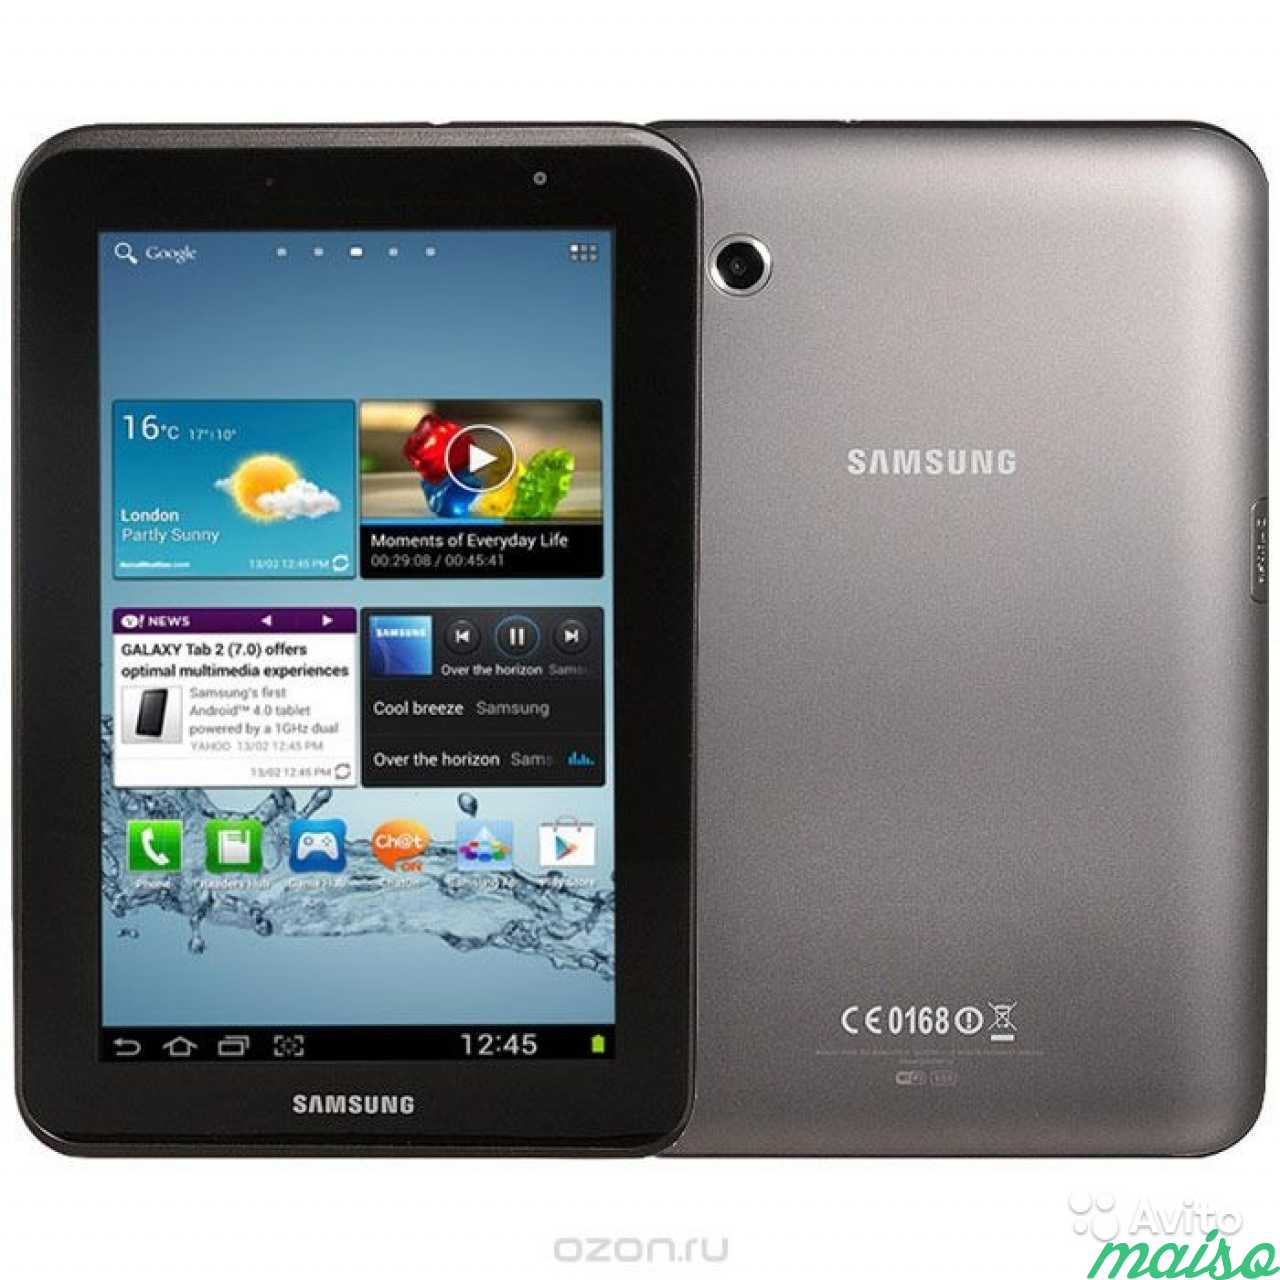 Samsung 2 7.0. Samsung Galaxy Tab p3110. Samsung Galaxy Tab 2 7. Планшет Samsung Galaxy Tab 2 7.0. Samsung Galaxy Tab p3110 8gb.